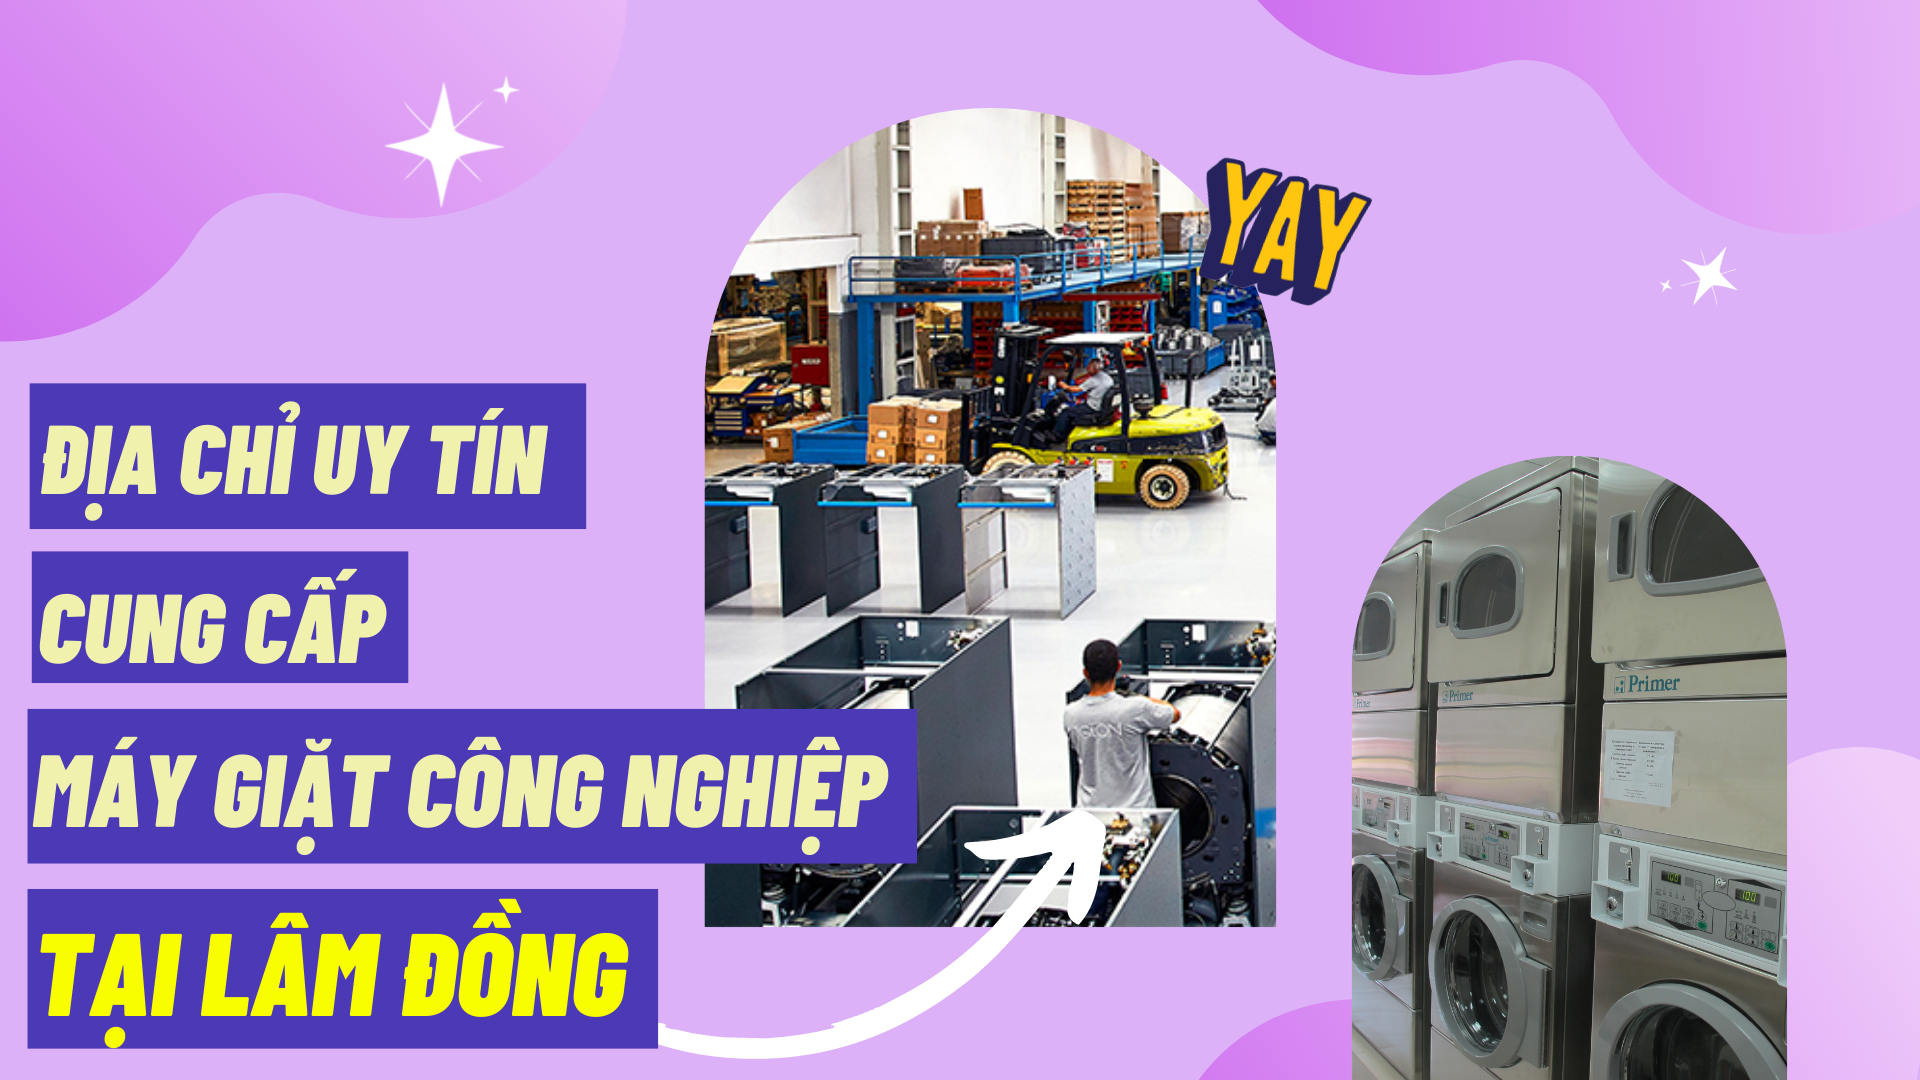 Địa chỉ uy tín cung cấp máy giặt công nghiệp tại Lâm Đồng